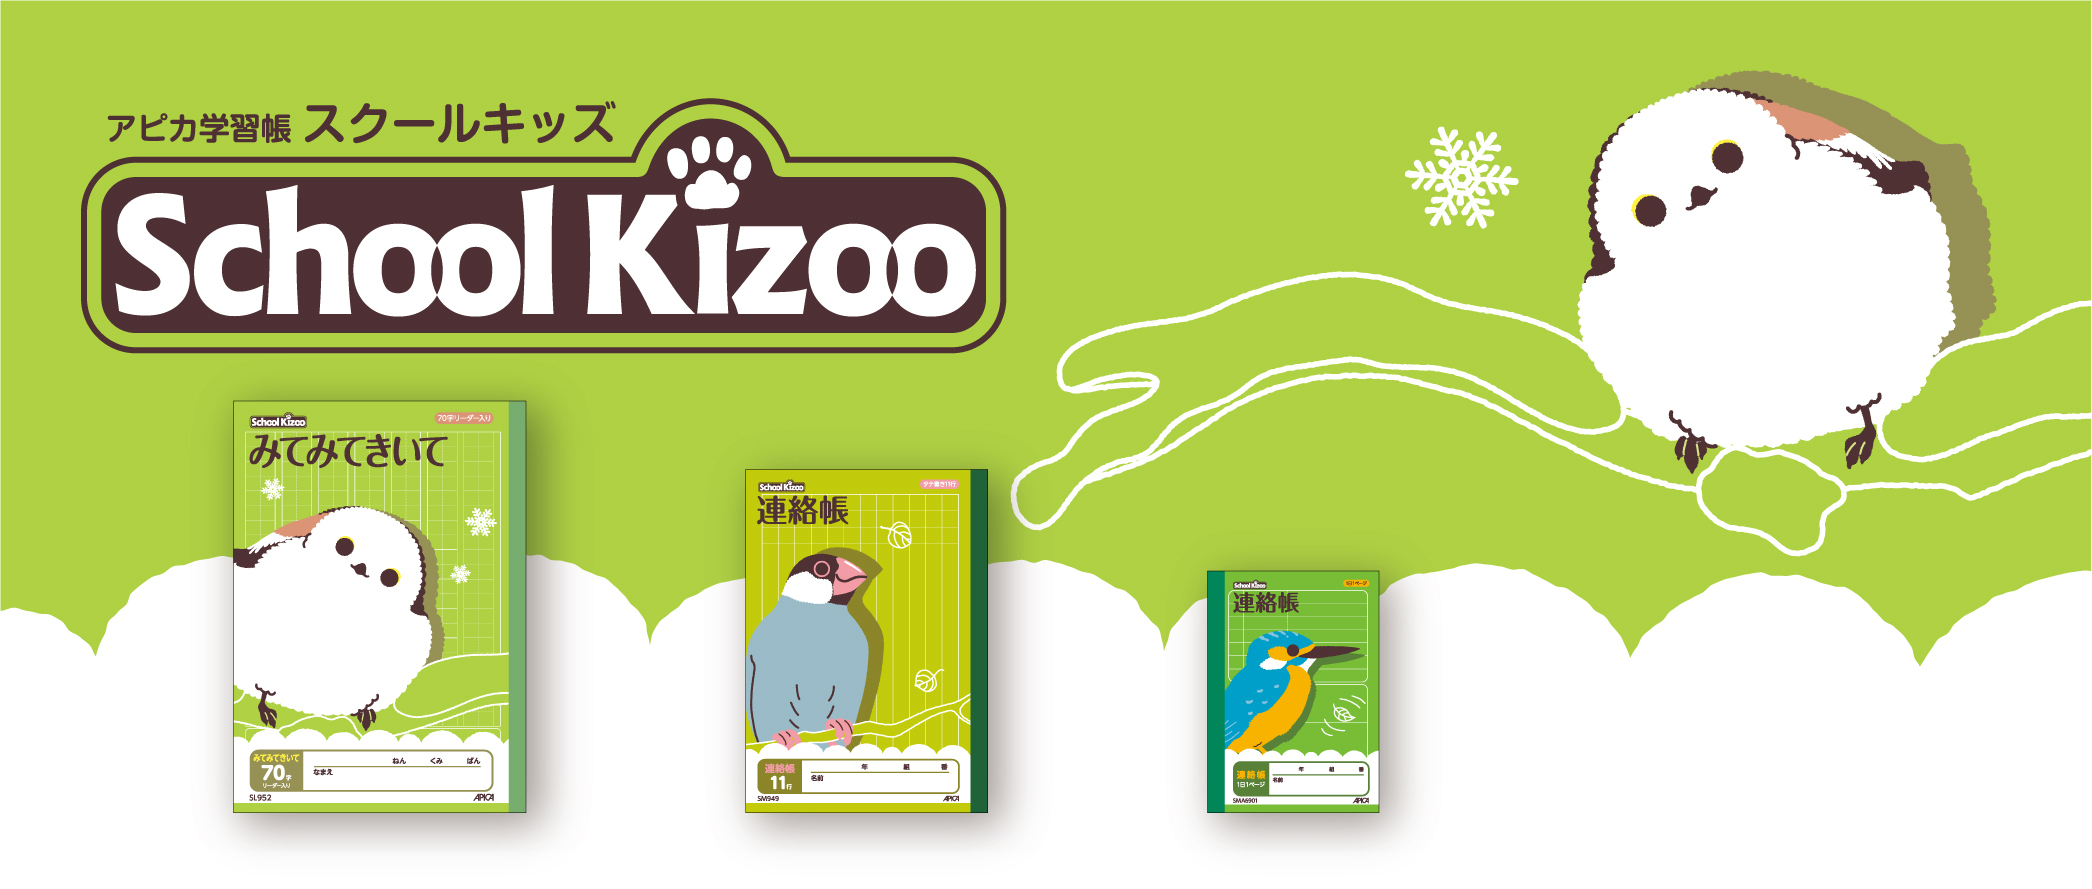 かわいい動物のイラストが特徴の学習帳シリーズ School Kizoo スクール キッズ より新アイテム3種を12月22日より順次発売 日本ノート株式会社のプレスリリース